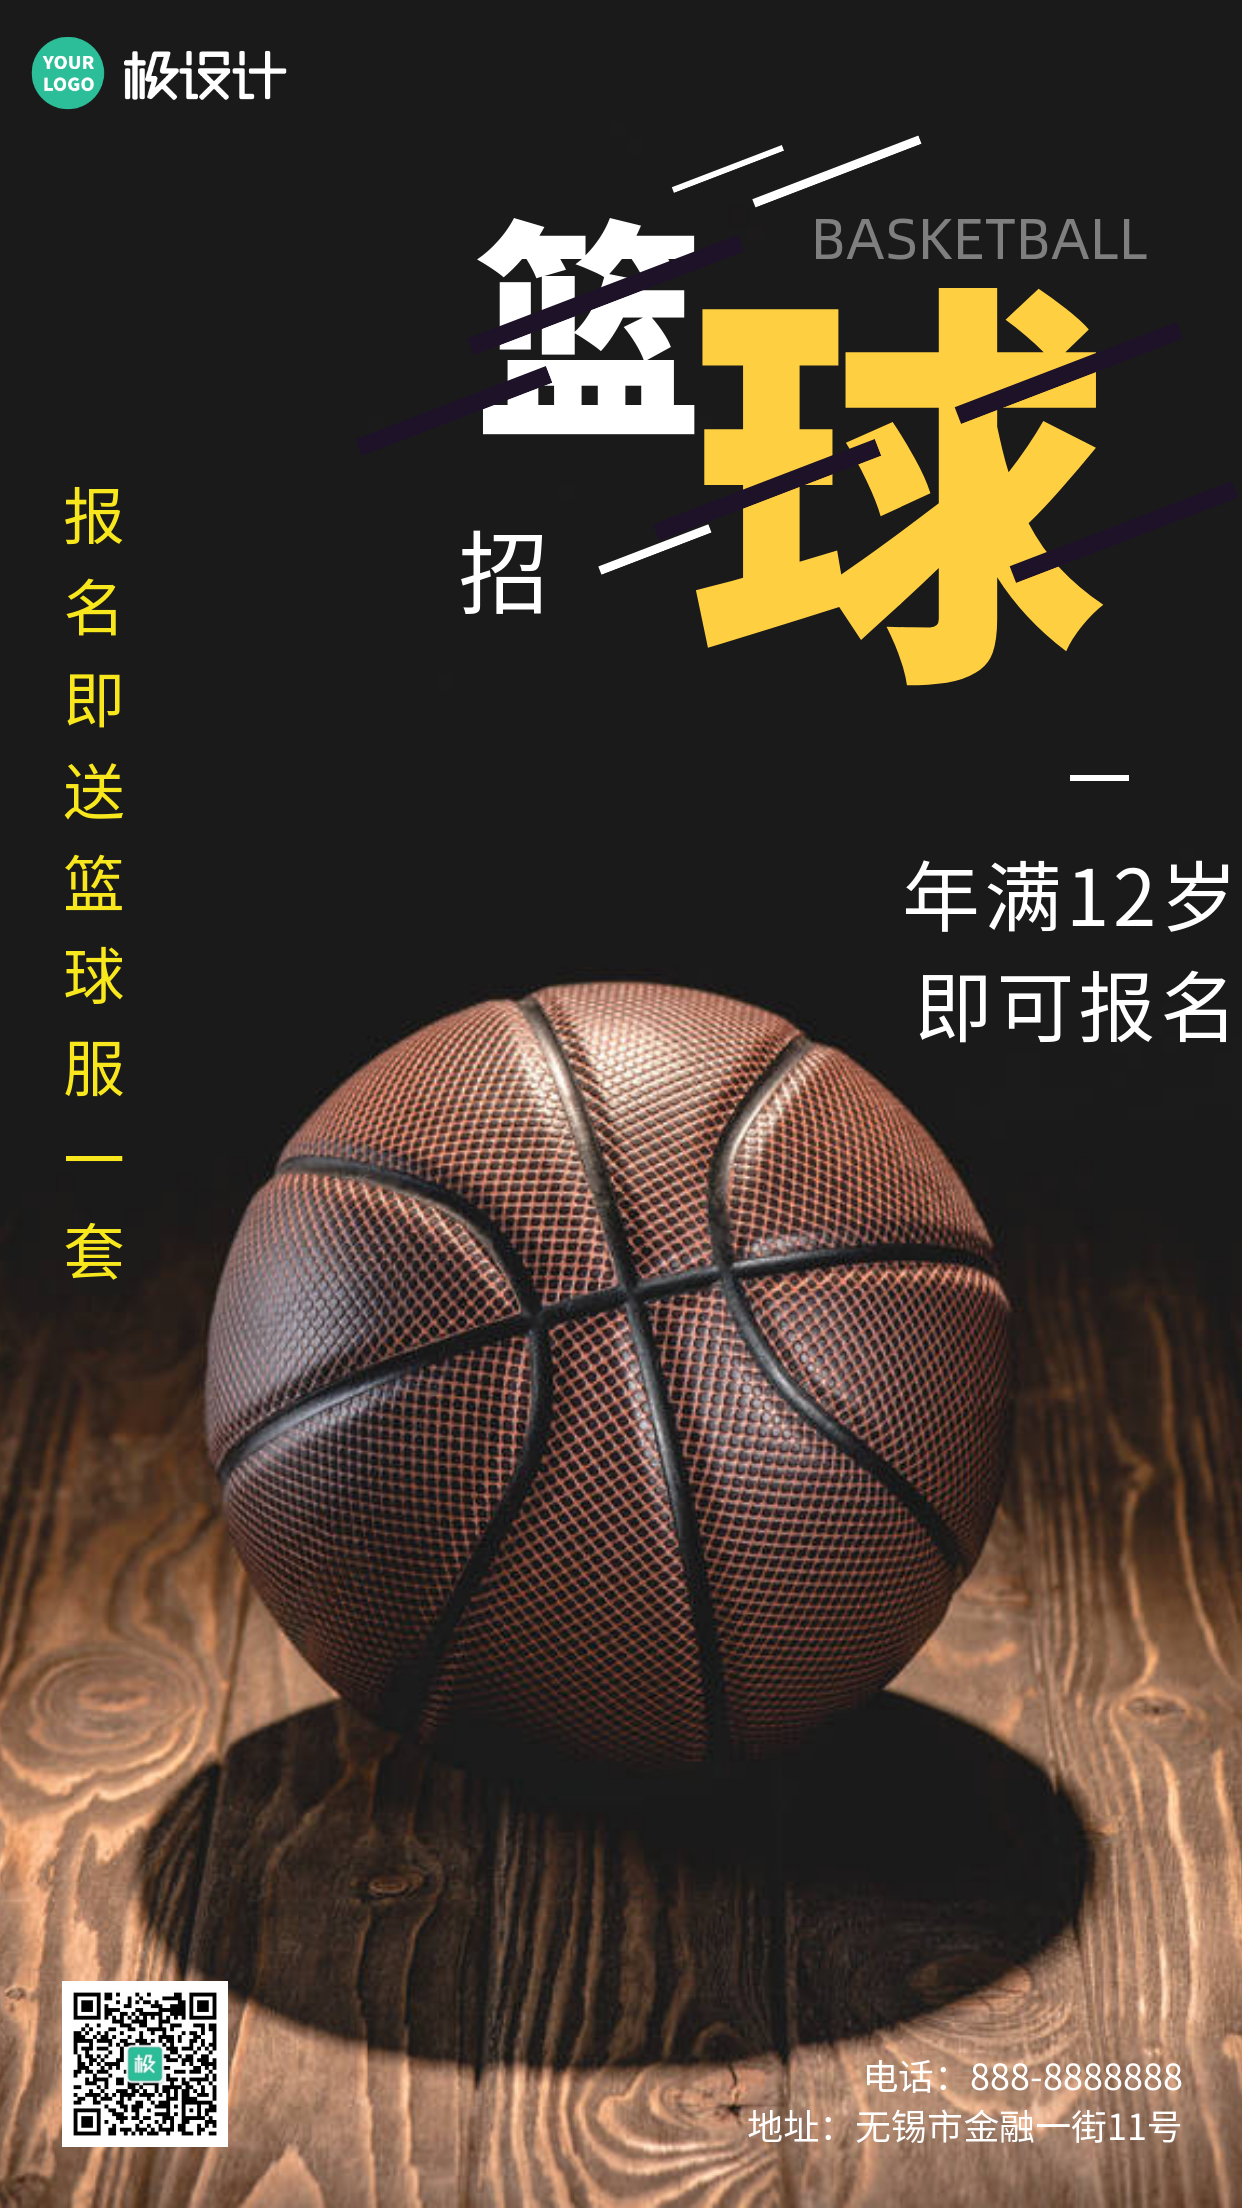 简约大气篮球兴趣班宣传摄影图海报